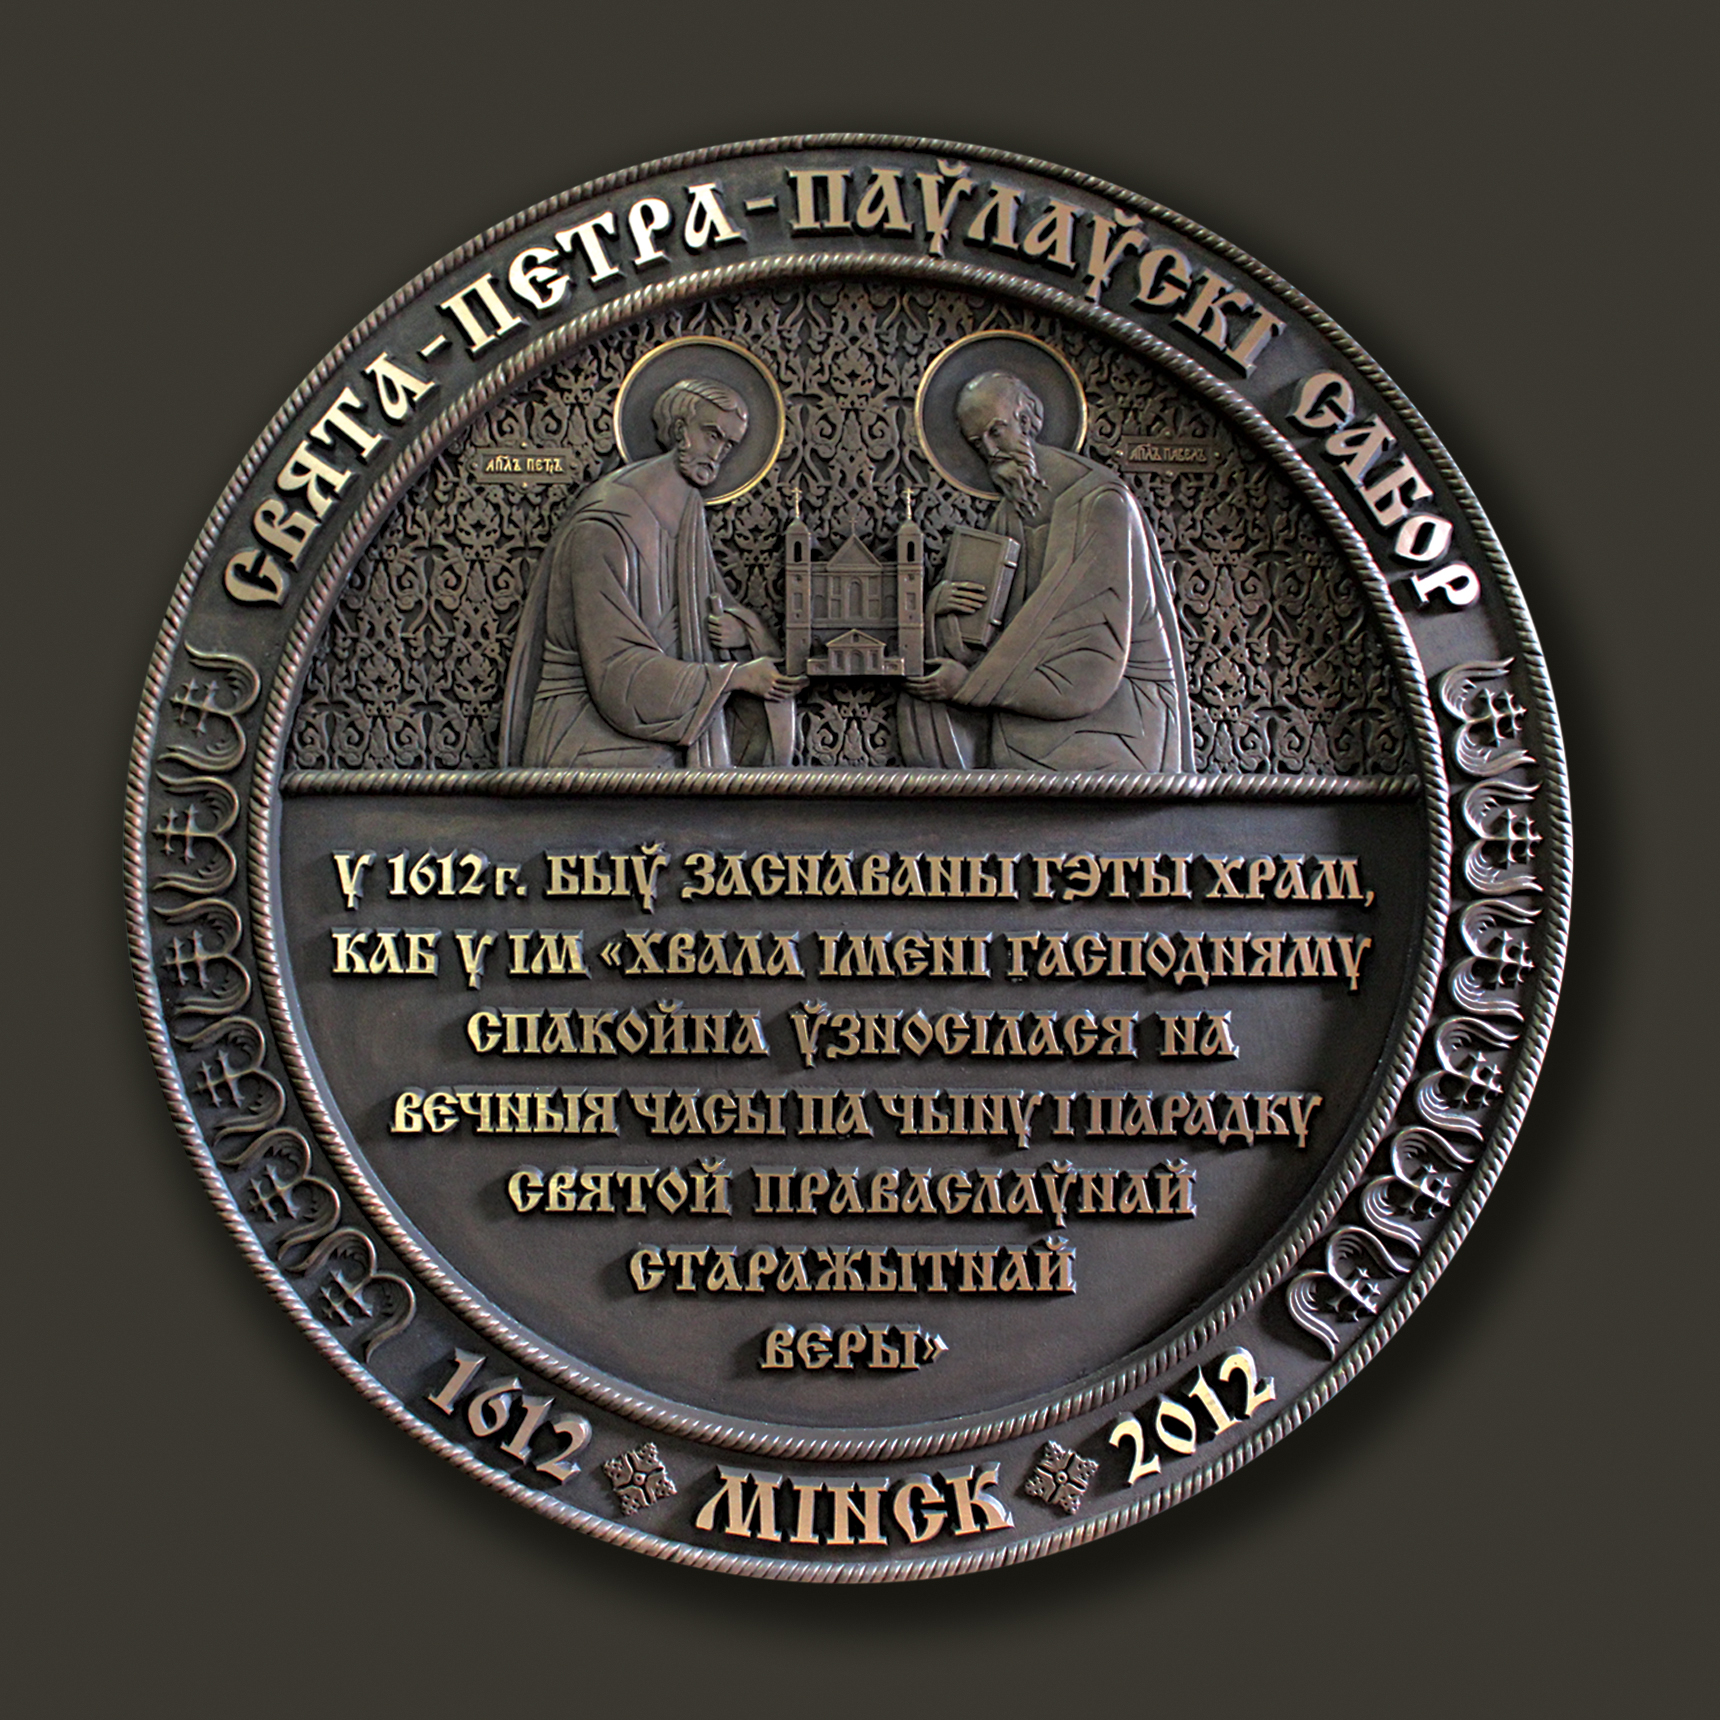 Памятная доска в честь 400-летия основания Свято-Петро-Павловского собора.